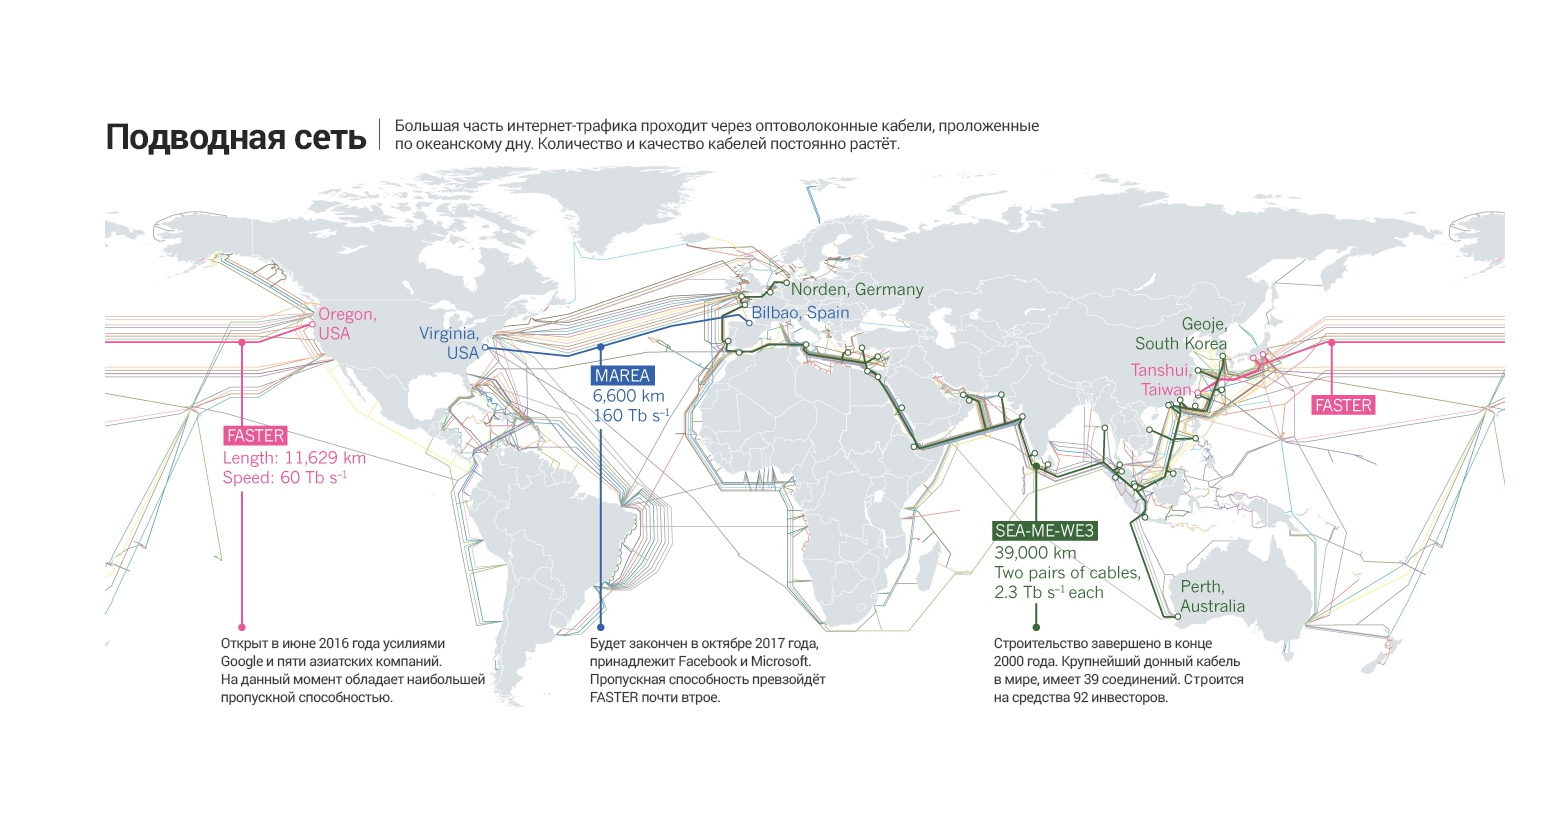 Проходящий трафик. Карта интернет кабелей. Карта подводных кабелей интернета. Карта интернет кабелей в мире.